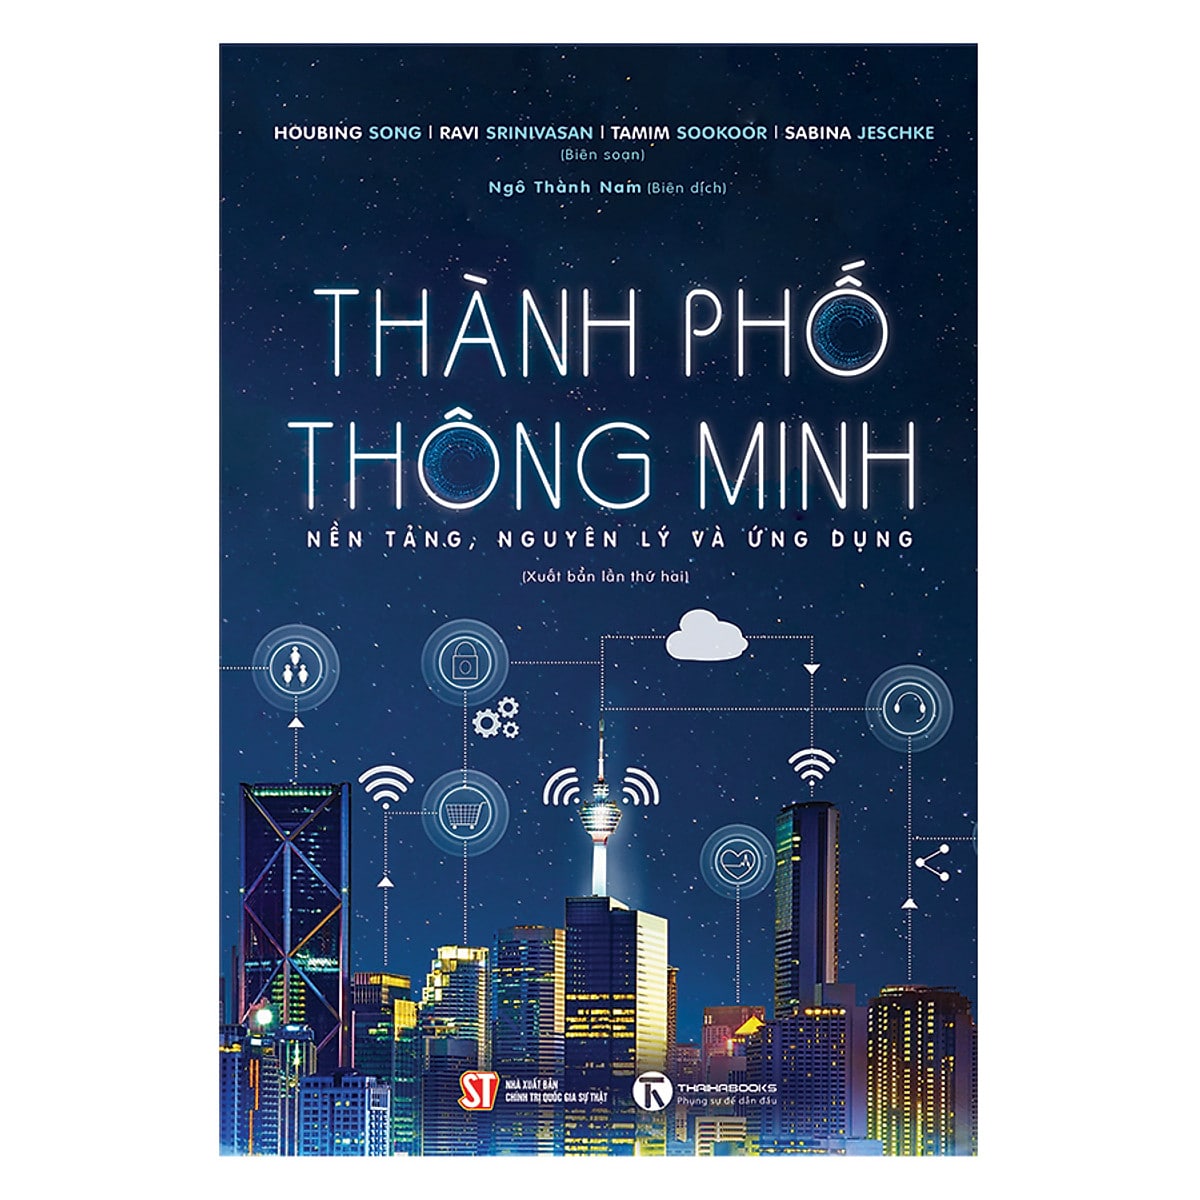 05 Thanh Pho Thong Minh Nen Tang Nguyen Ly Va Ung Dung